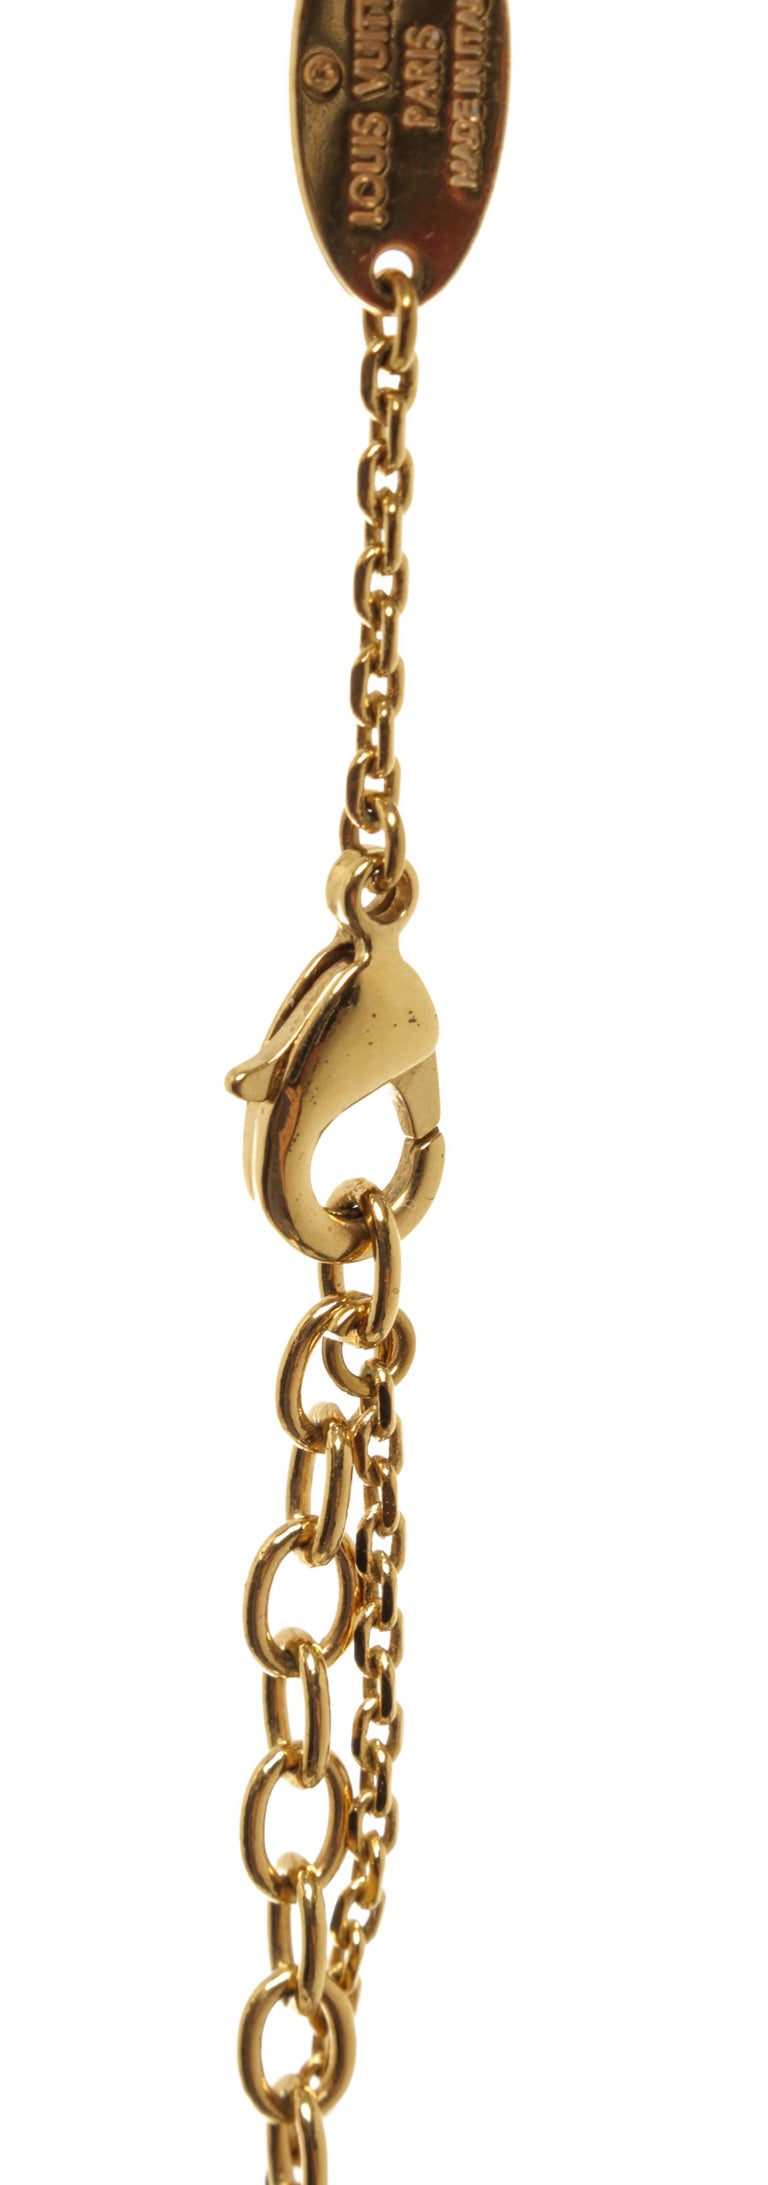 Louis Vuitton LV Maison Fondée en 1854 I.D. Necklace - Gold-Tone Metal  Pendant Necklace, Necklaces - LOU267021